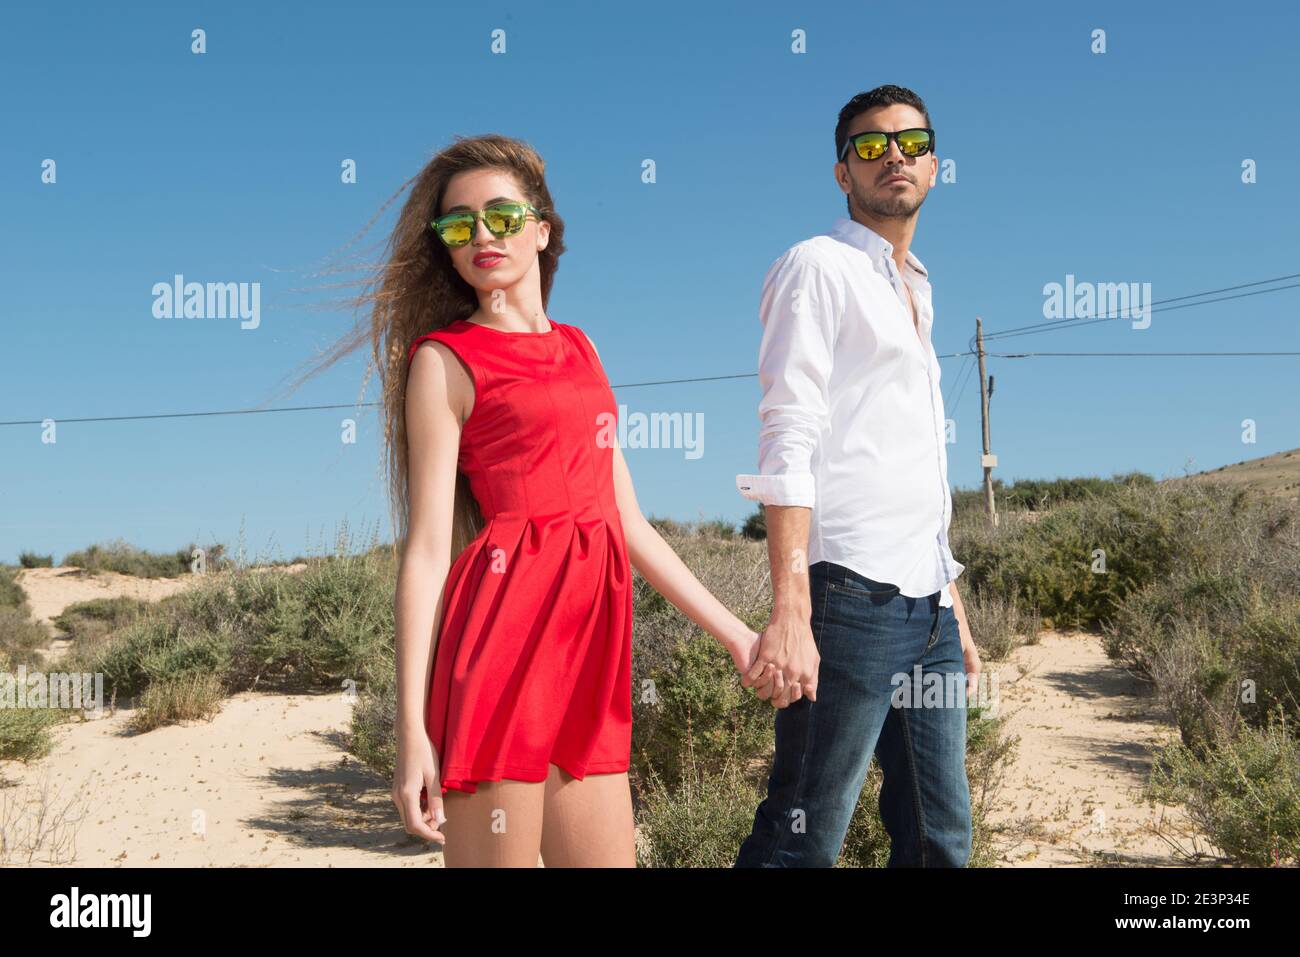 jeune couple marchant dans un paysage désertique sous le bleu ciel Banque D'Images